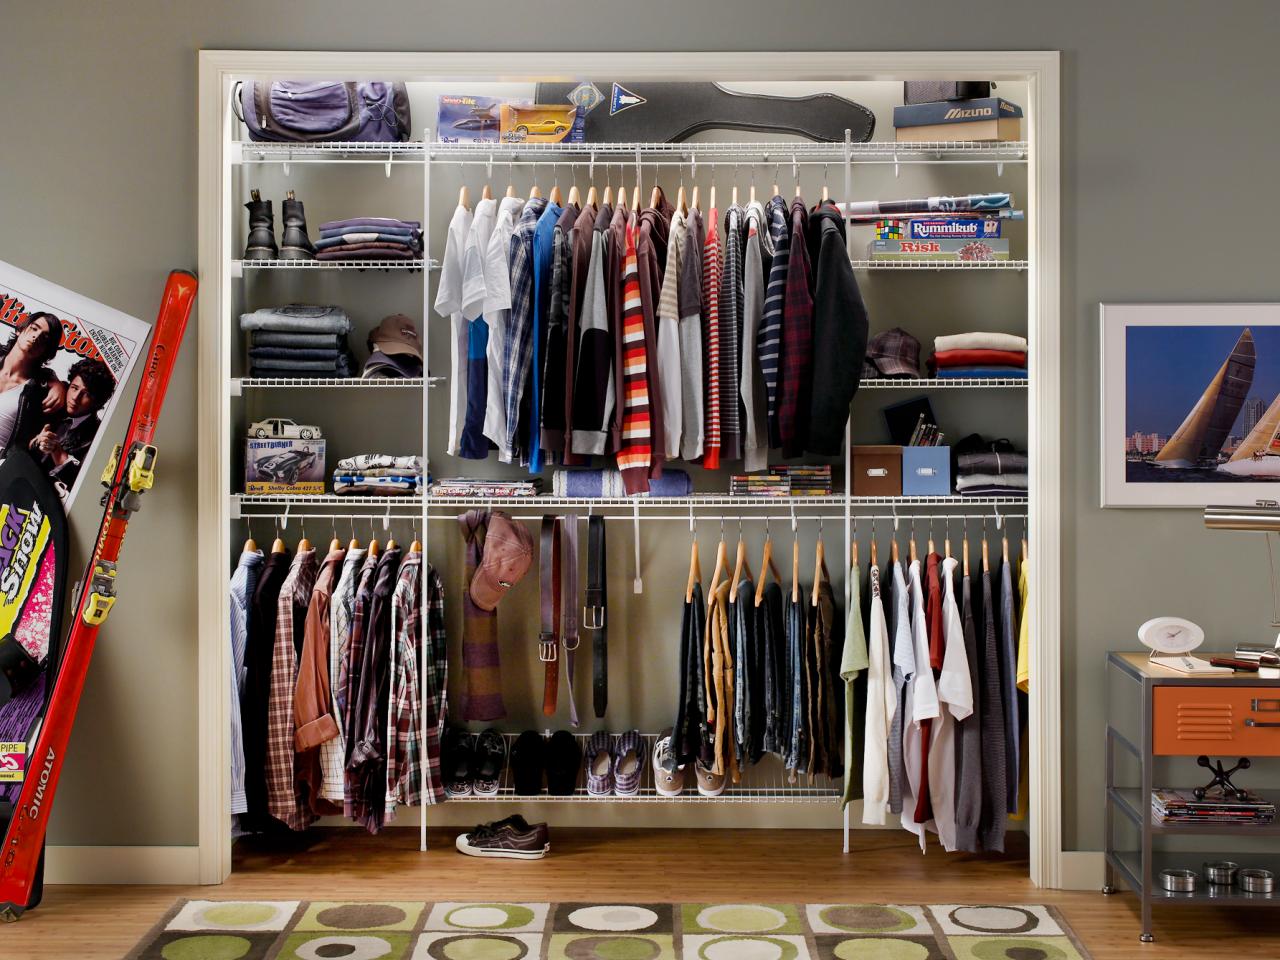 Оптимальное хранение. Хранение одежды. Организация шкафа для одежды. Организация хранения вещей в гардеробной. Идеи для хранения одежды.